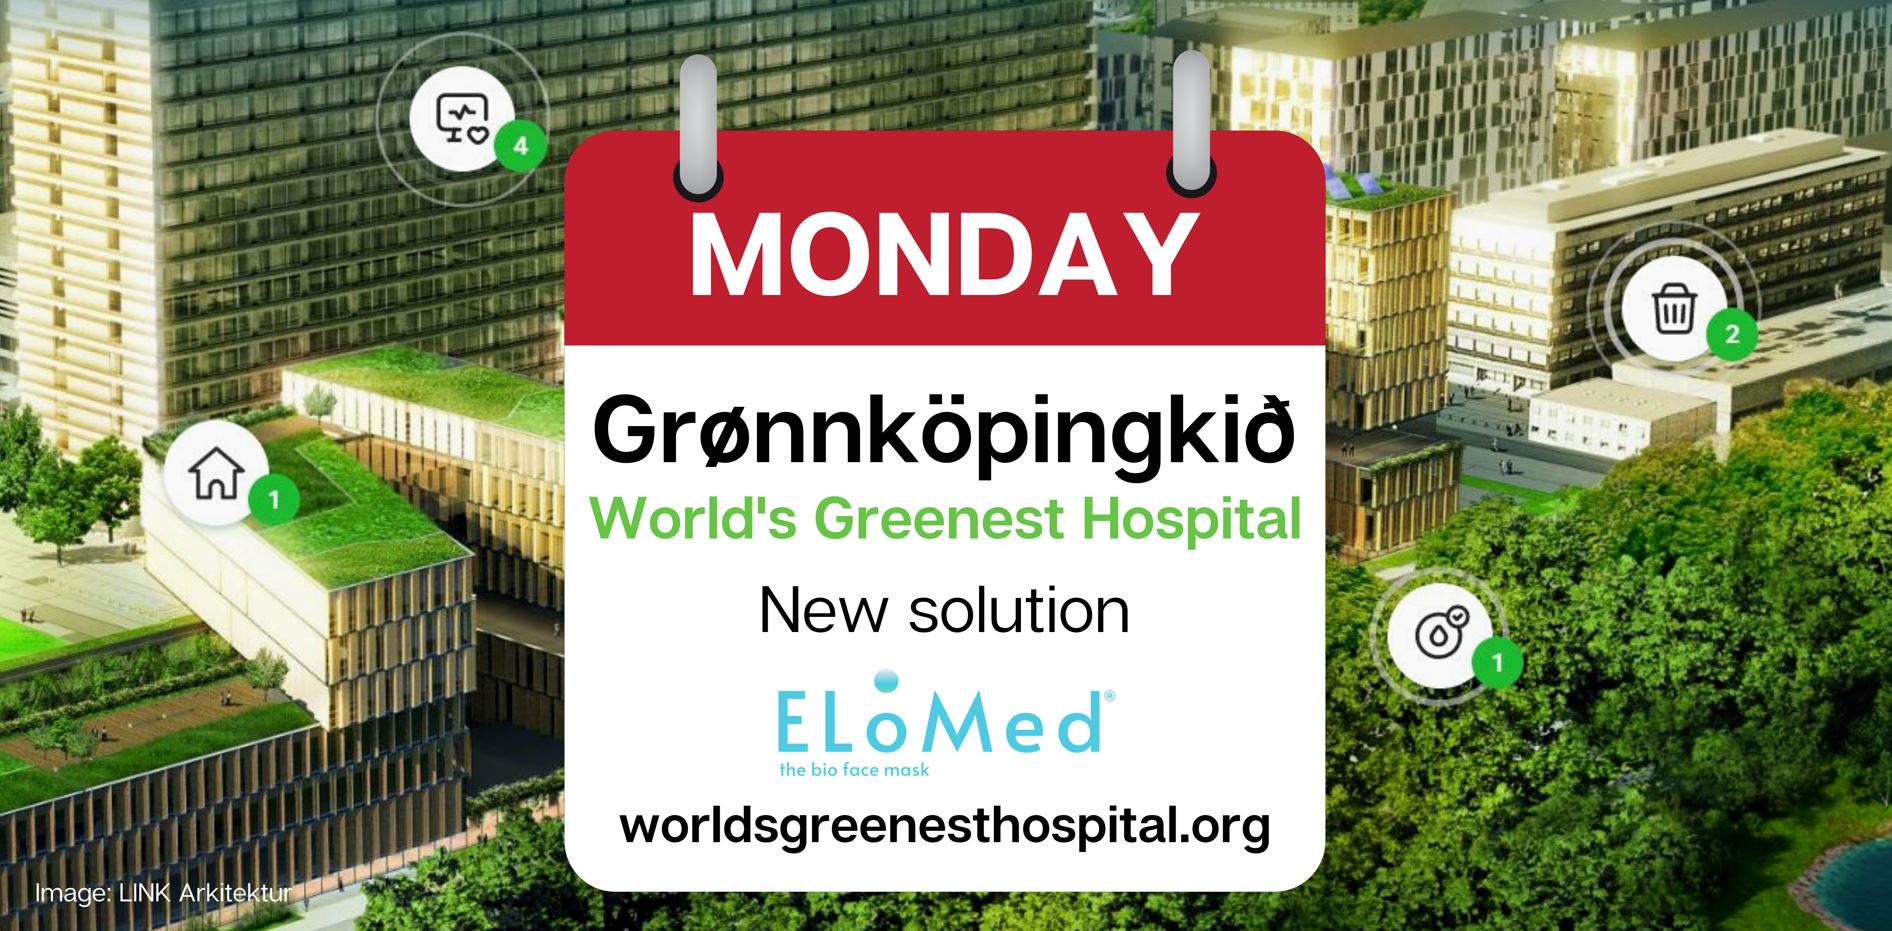 Grønnköpingkið Mondays: New Solution From ELoMed